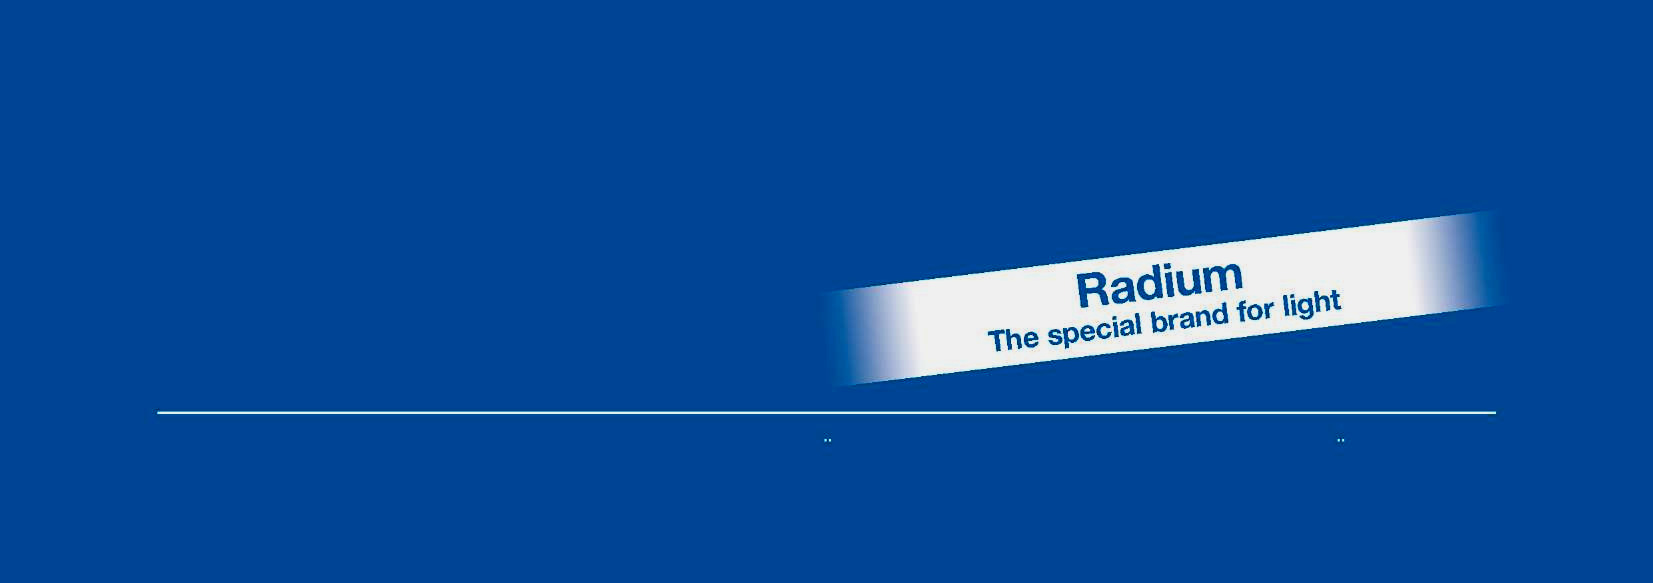 A Radium apresenta: A Gama LED da Radium A mais recente tecnologia num moderno design. 01:01 troca directa das actuais lâmpadas incandescentes e de halogéneo.